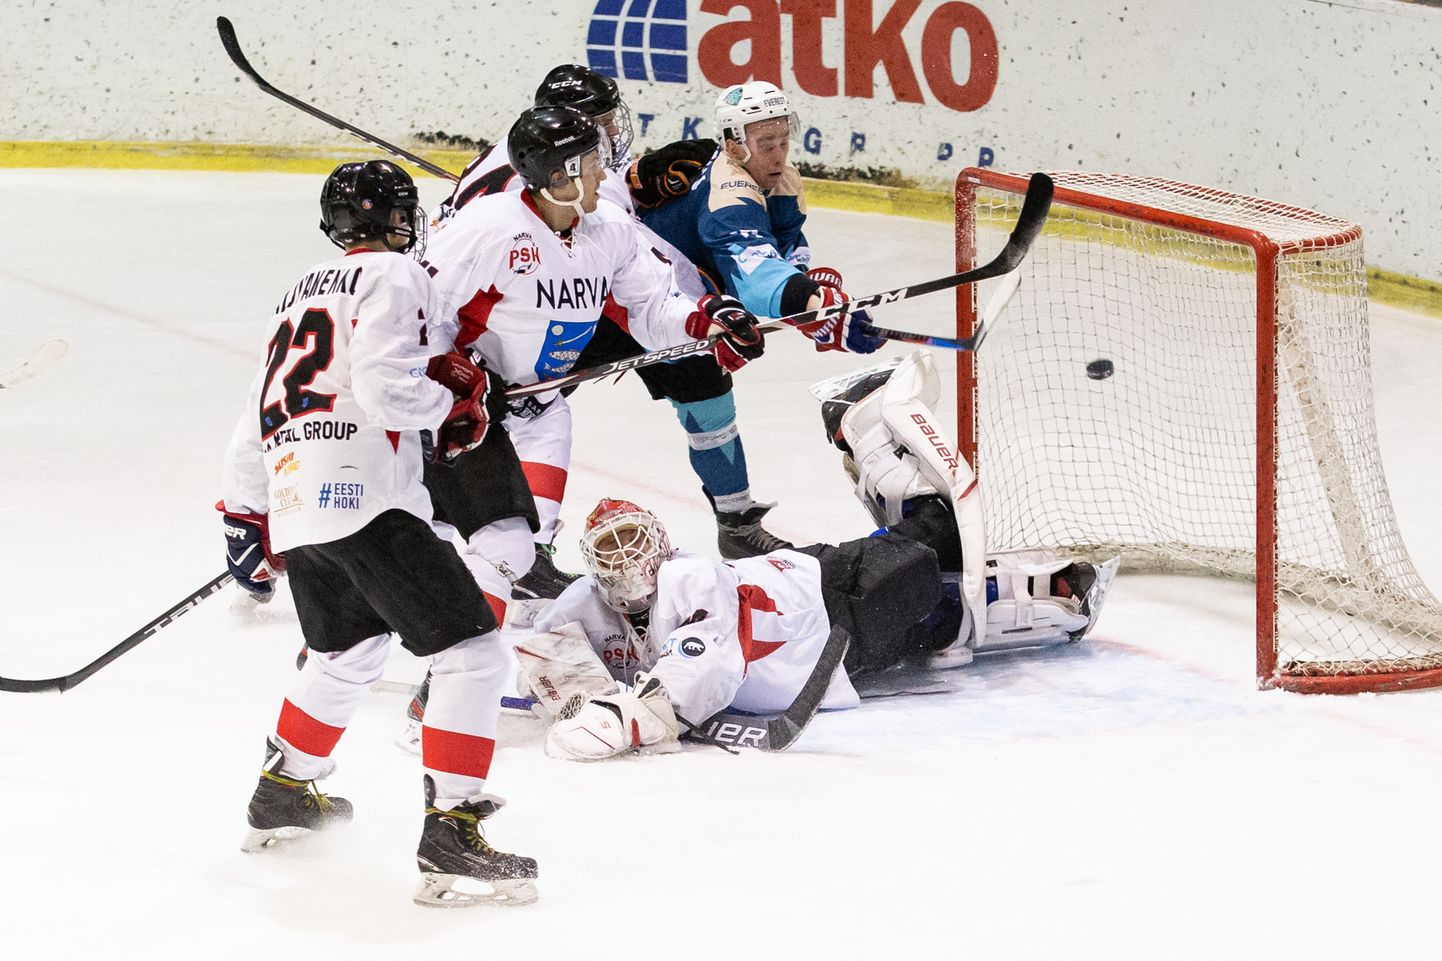 Хоккейные битвы между кохтла-ярвеским "Everest" и "Narva PSK" в последние годы были равносильными. В первой игре нынешнего сезона победил "Everest" со счетом 5:3.